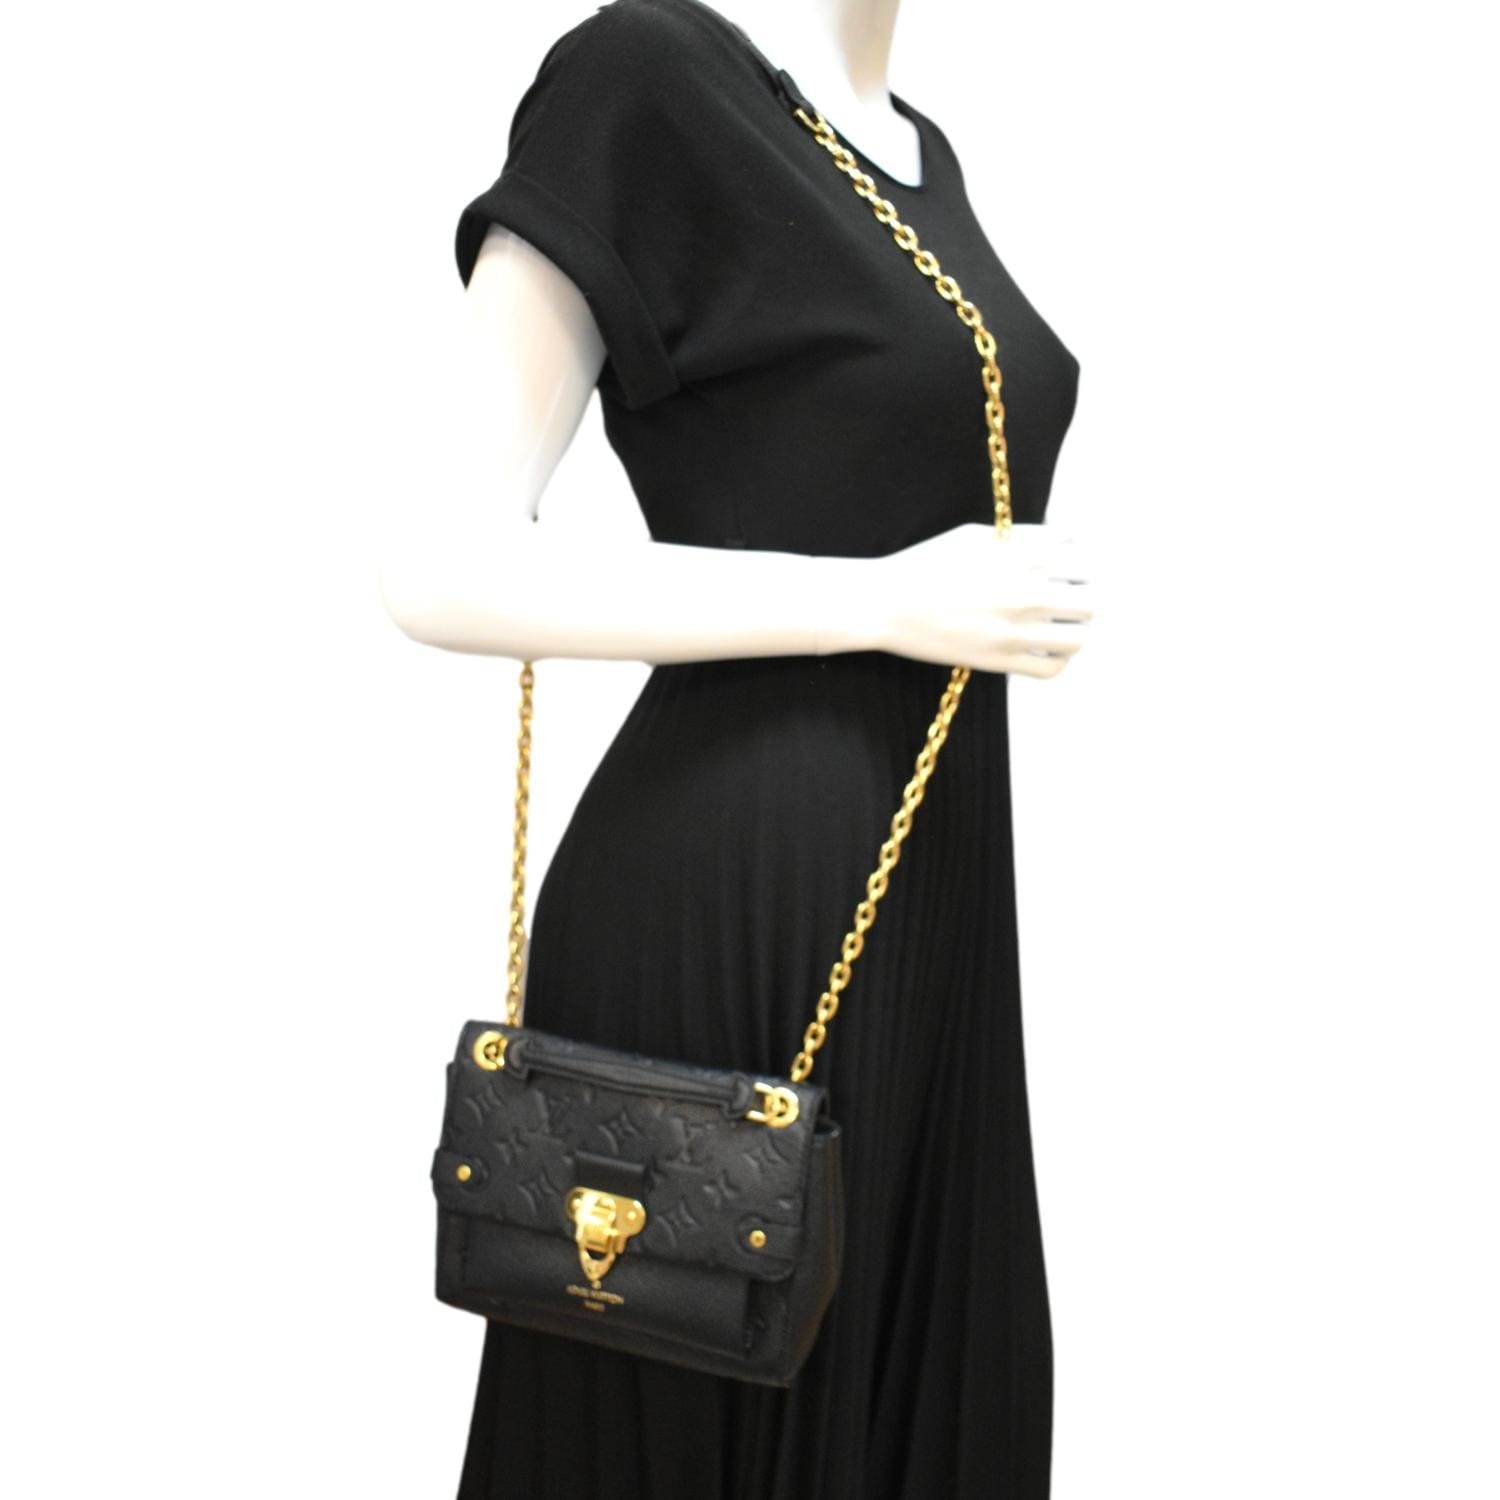 My fav-LV vavin bb black full leather gold chain bag #lvbag #lvbaglove, Lv Bag